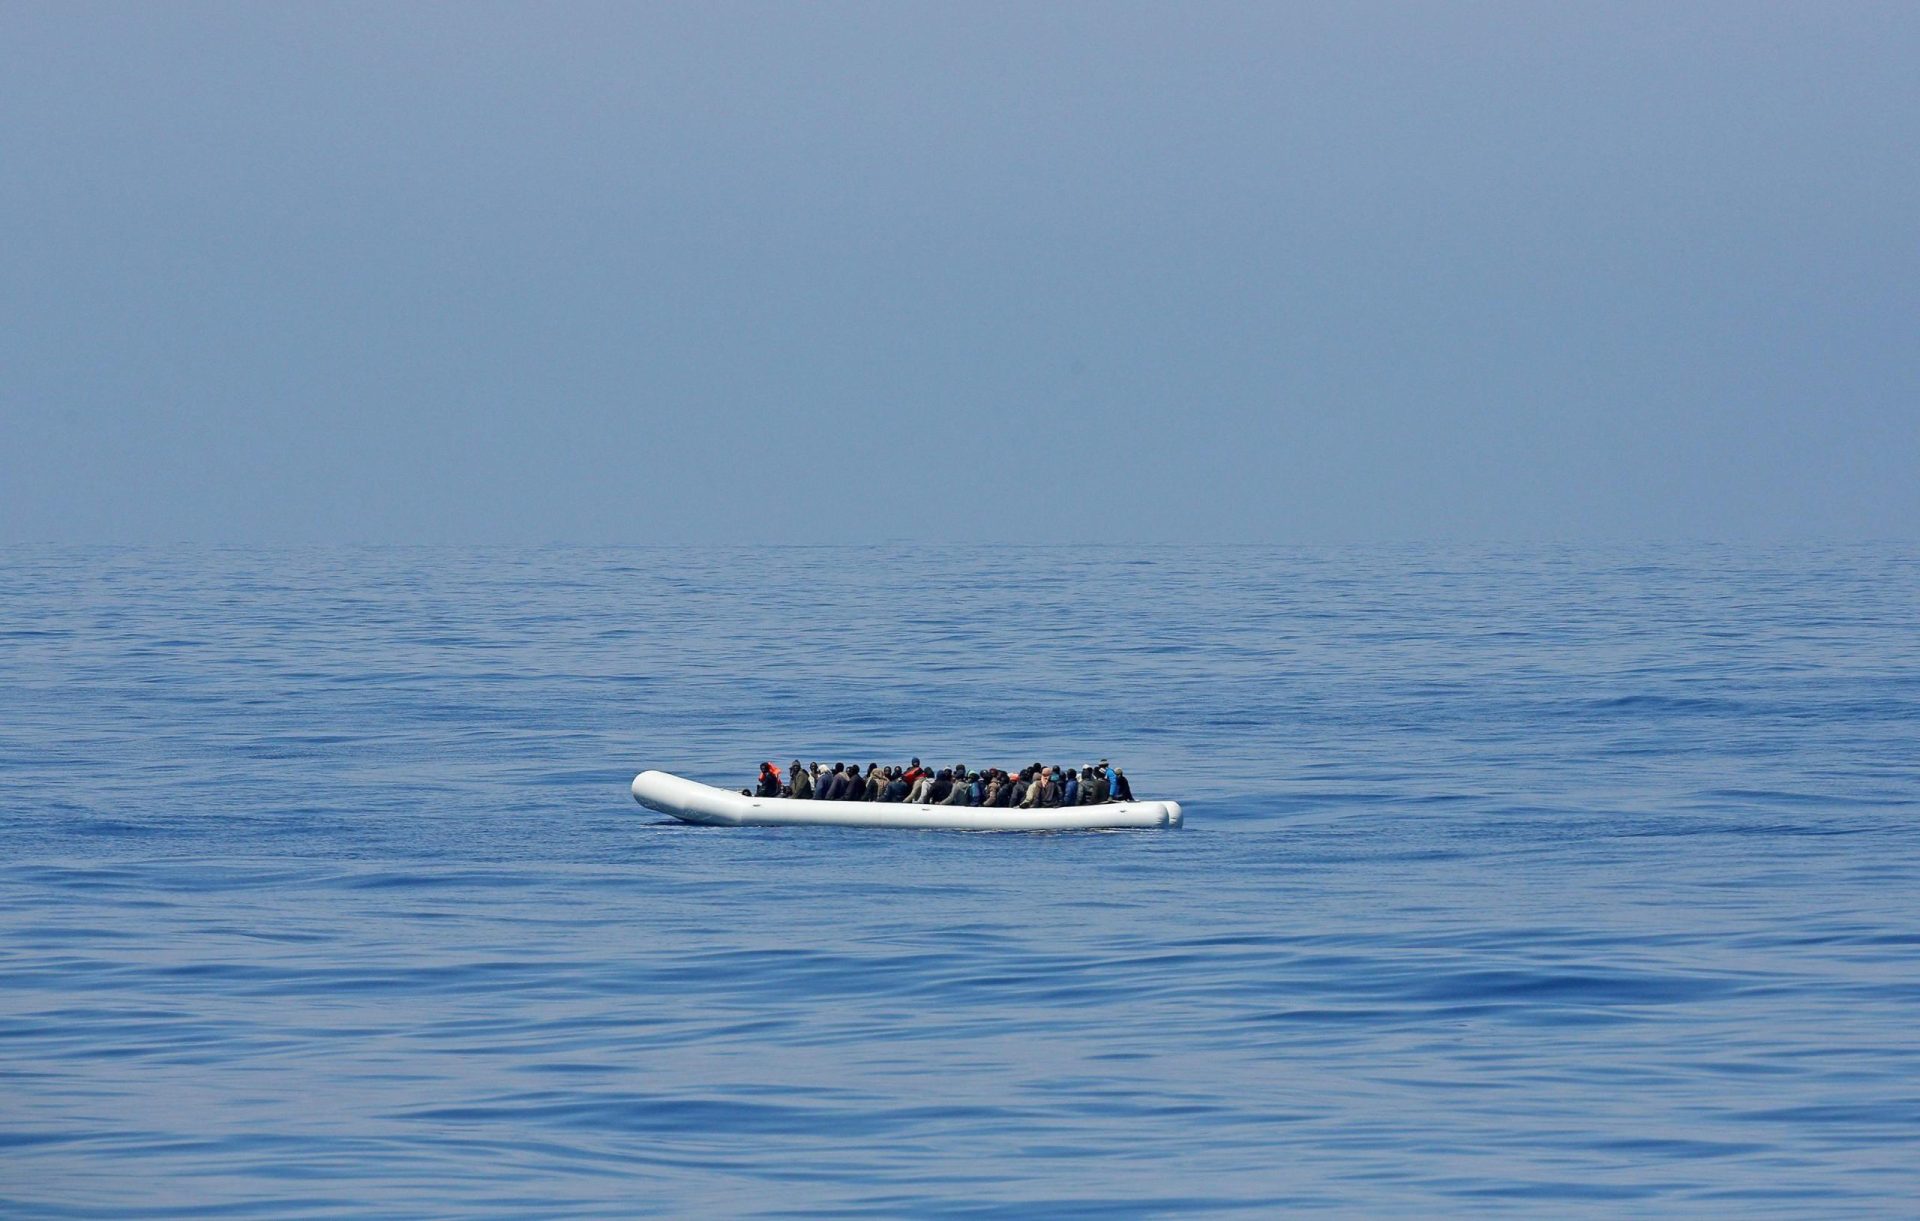 Barco de pesca com 200 migrantes a bordo detectado ao largo de Creta